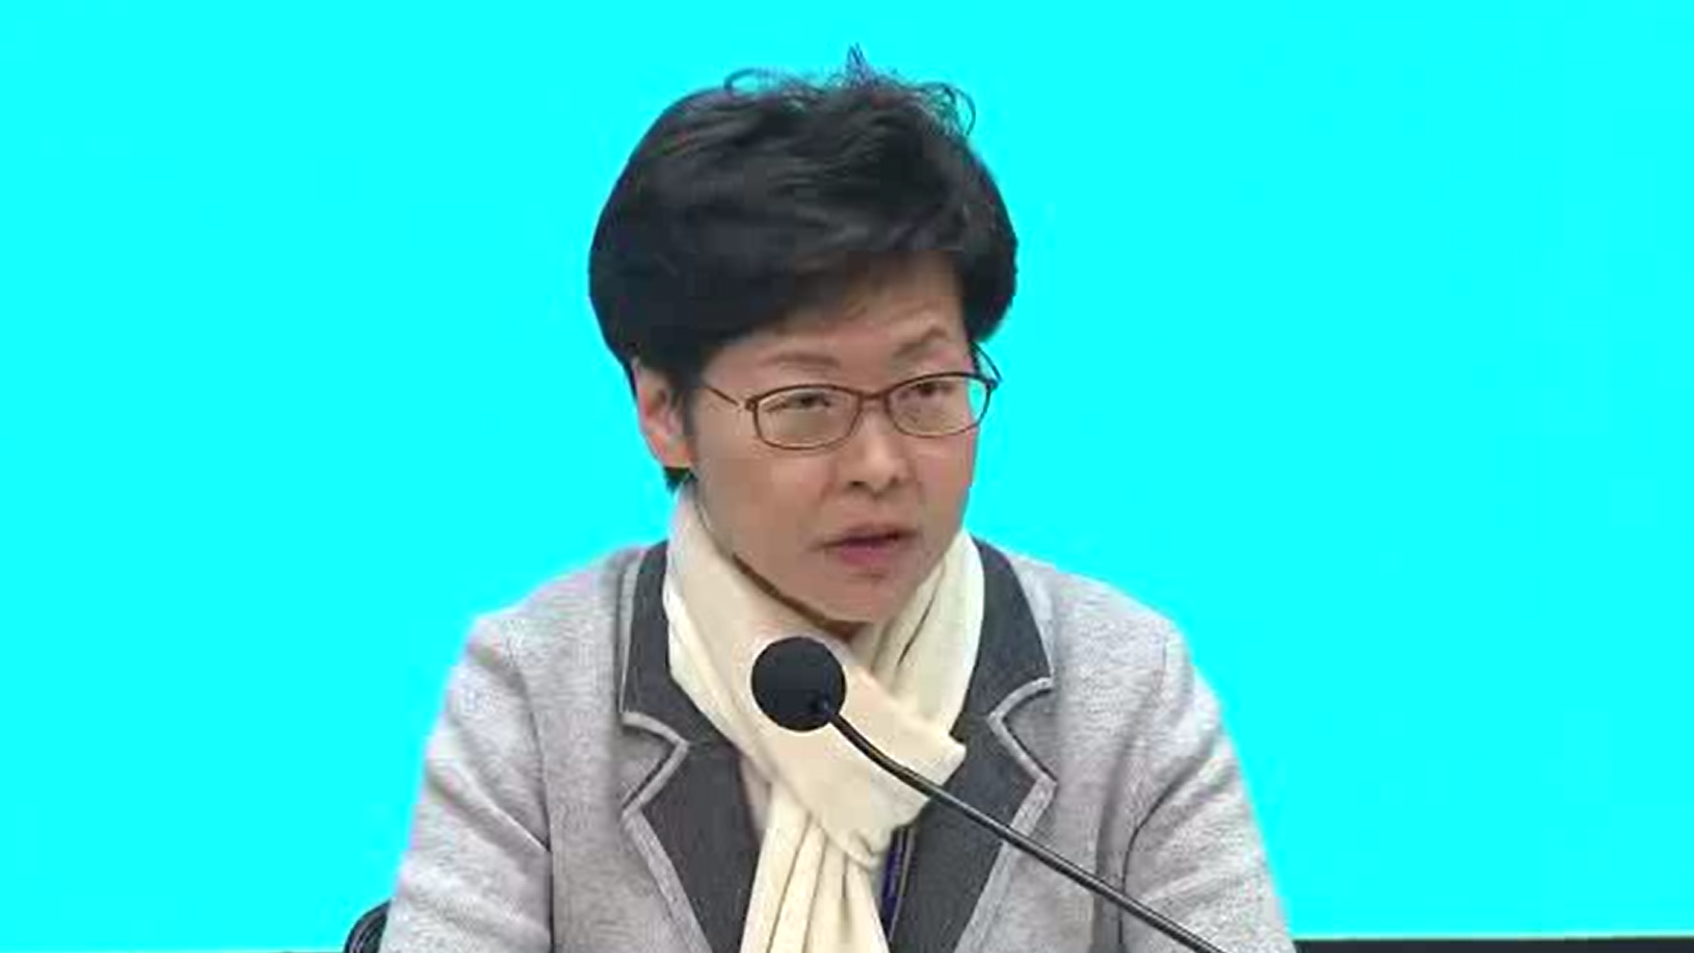 Live: Carrie Lam updates on coronavirus prevention in HK - CGTN